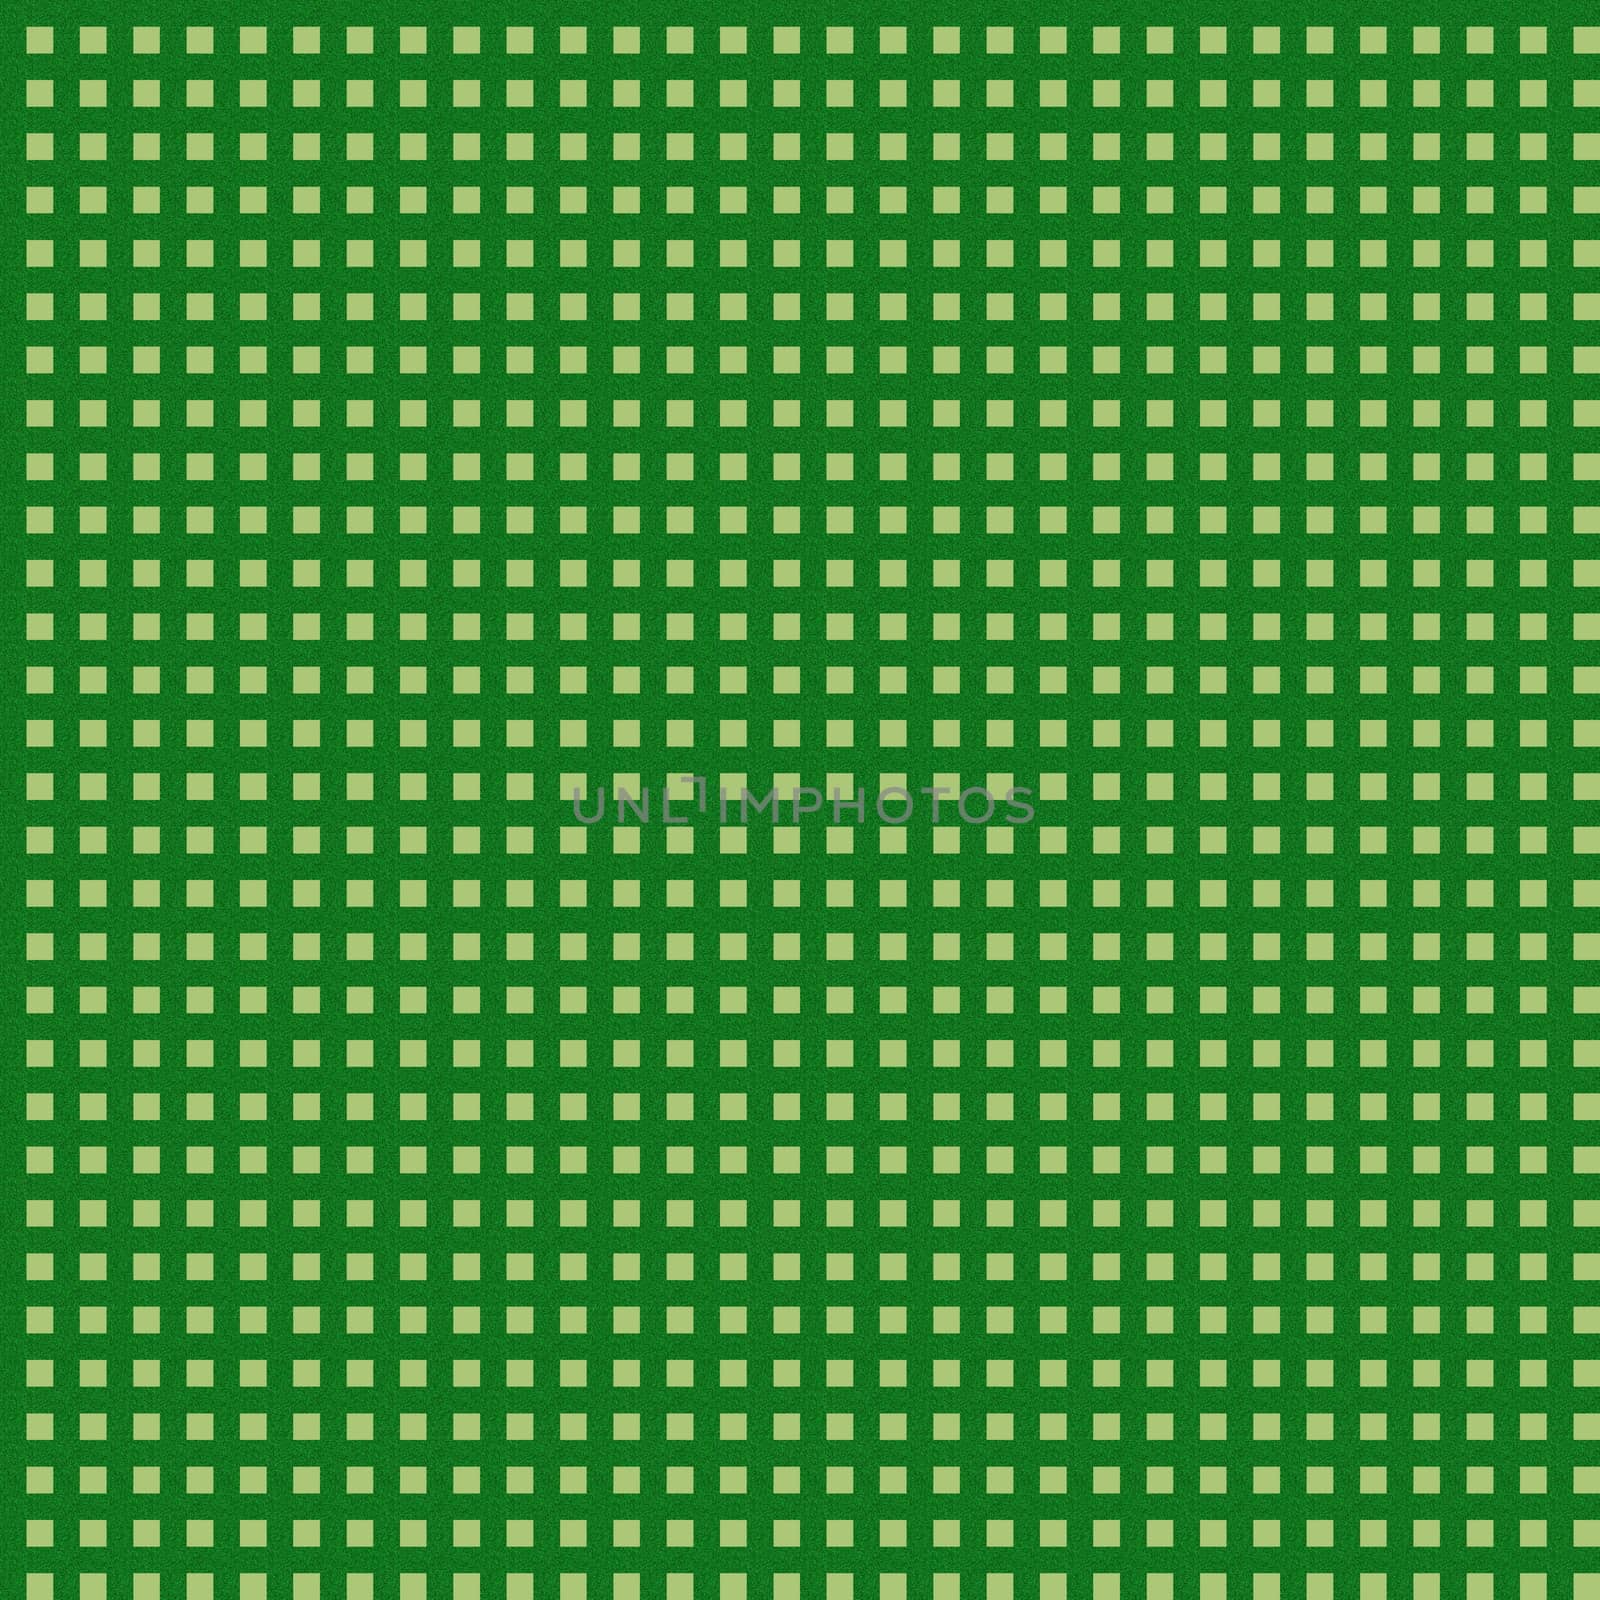 Green grass seamless tablecloth pattern as texture